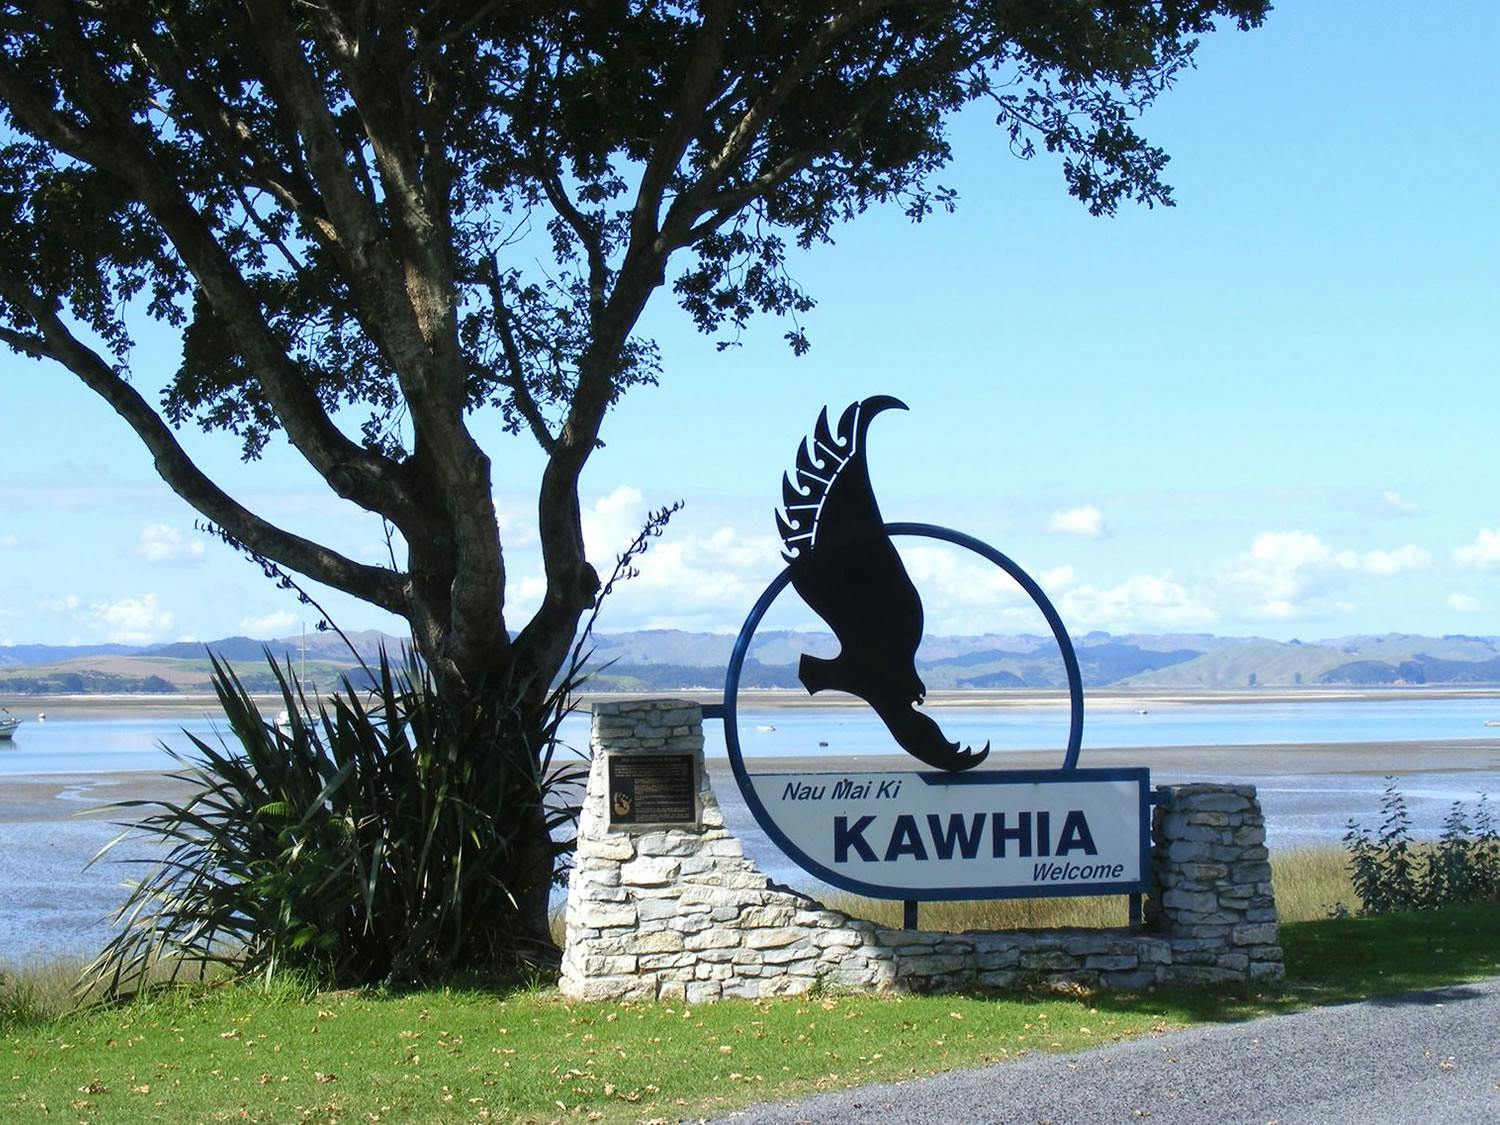 Welcome to Kawhia sign